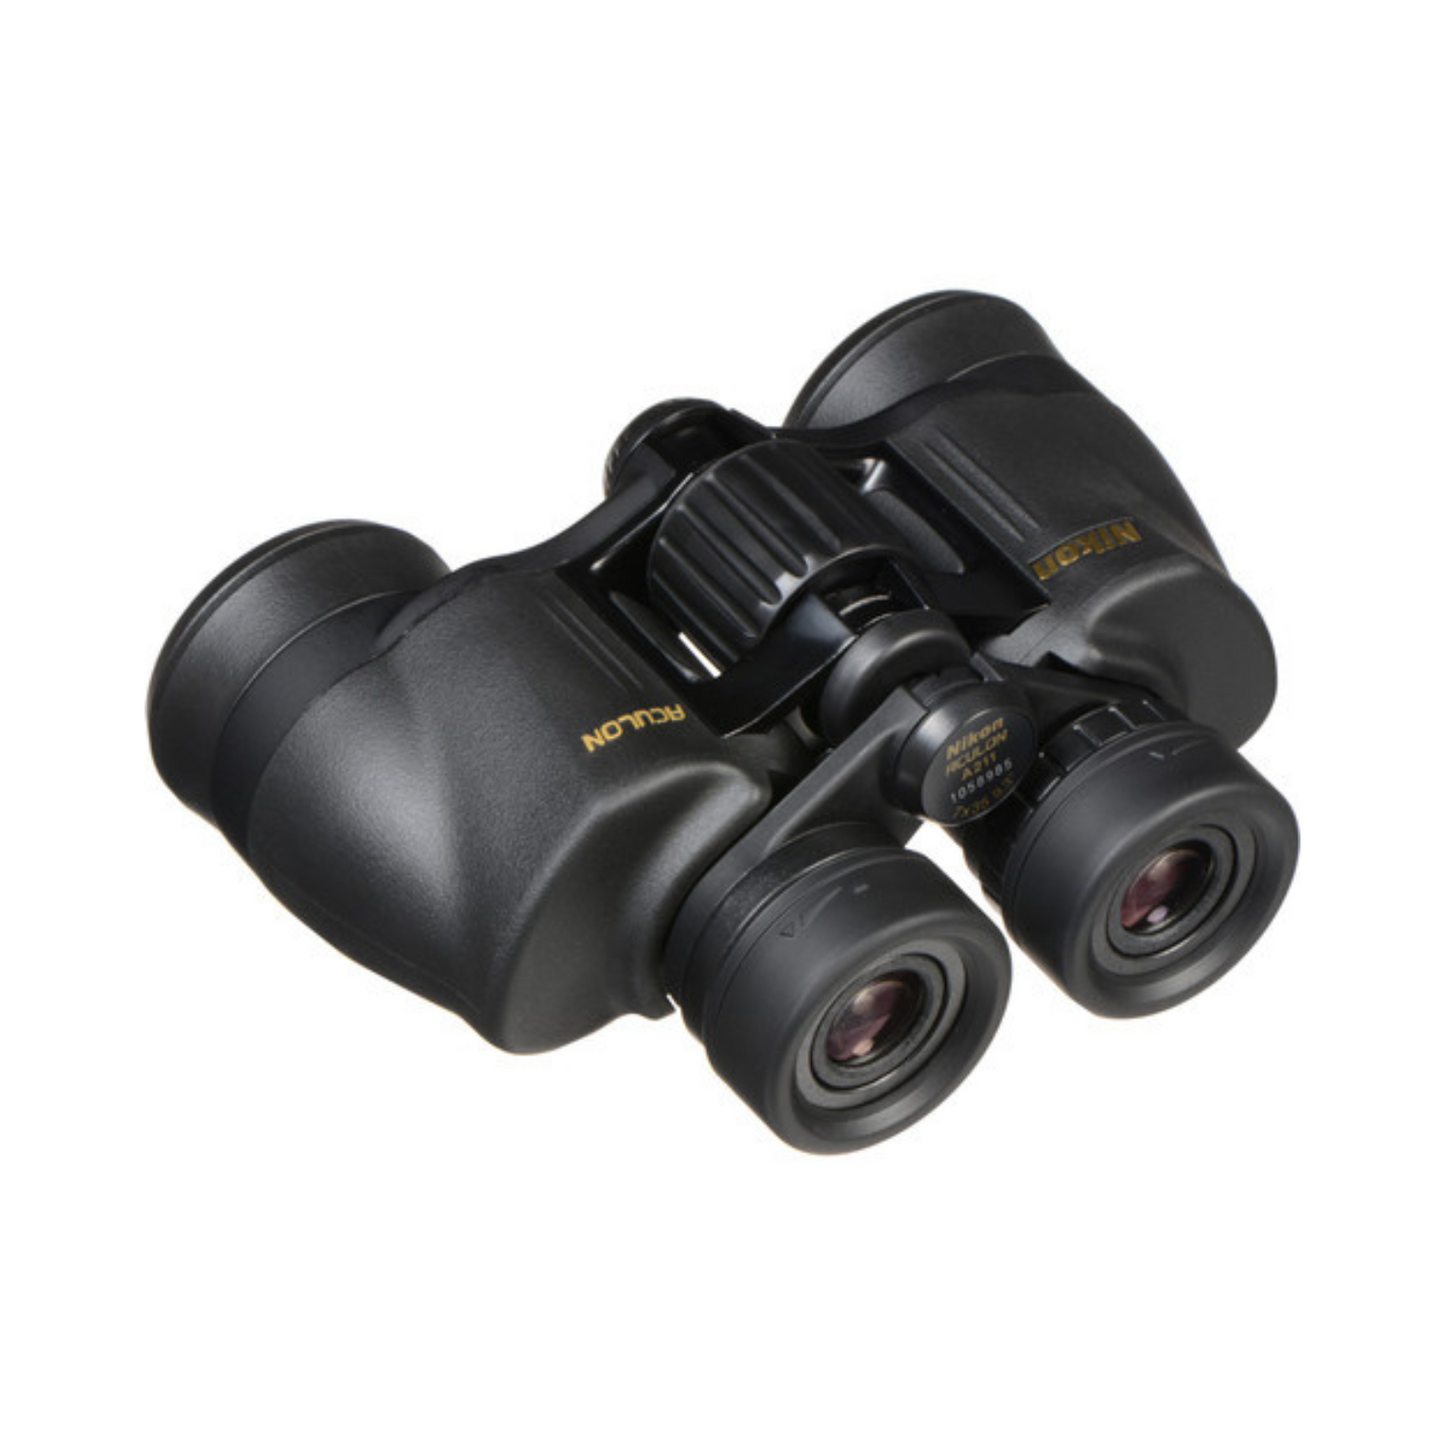 Nikon Aculon A211 7x35 Binocular (Black)